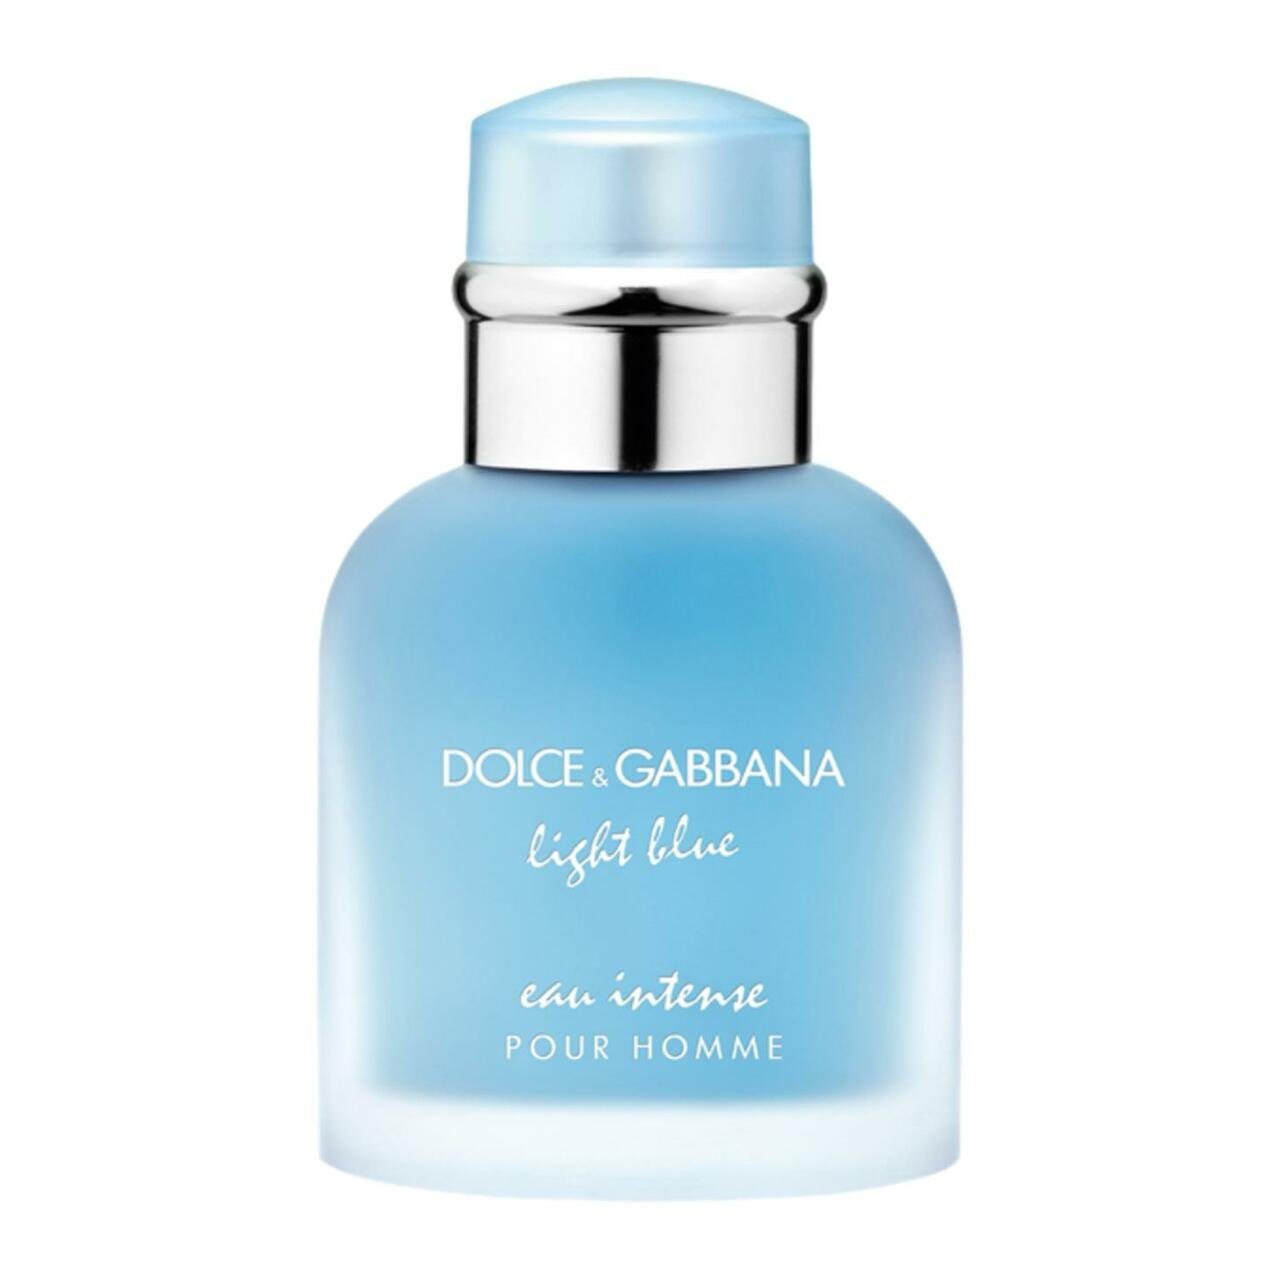 DOLCE & GABBANA Eau de Parfum Light Blue Pour Homme Eau Intense E.d.P. Nat. Spray